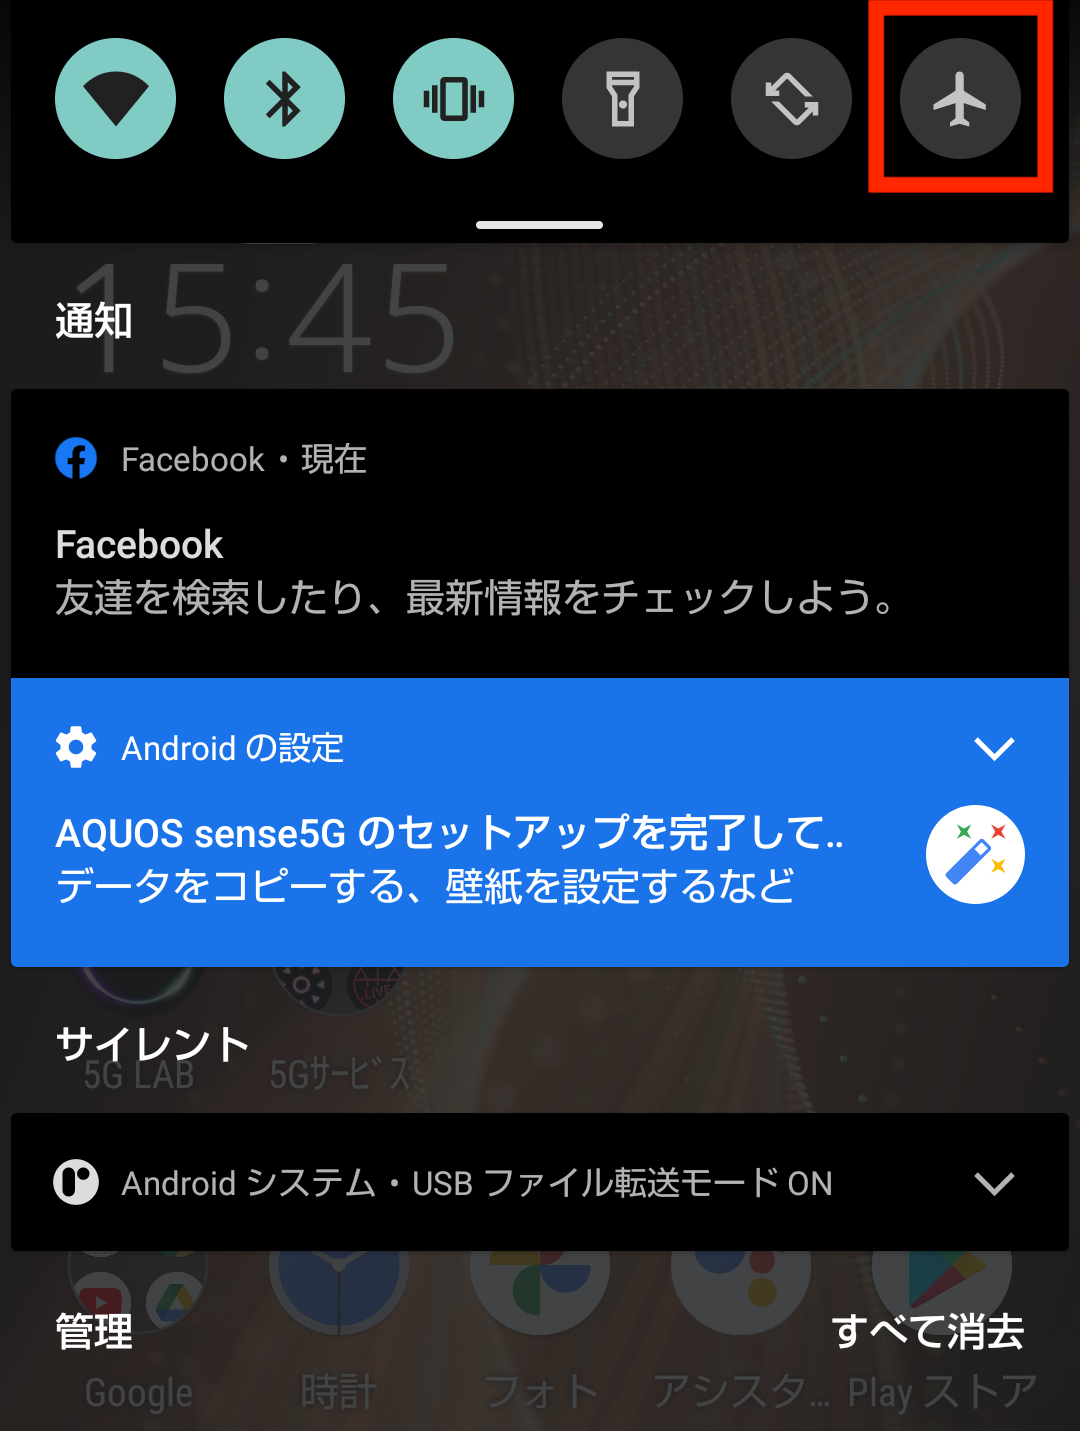 ドコモ AQUOS sense5G R6 SH-53A(Android 11)のクイックメニューで機内モード(飛行機のマーク)を選択する画面